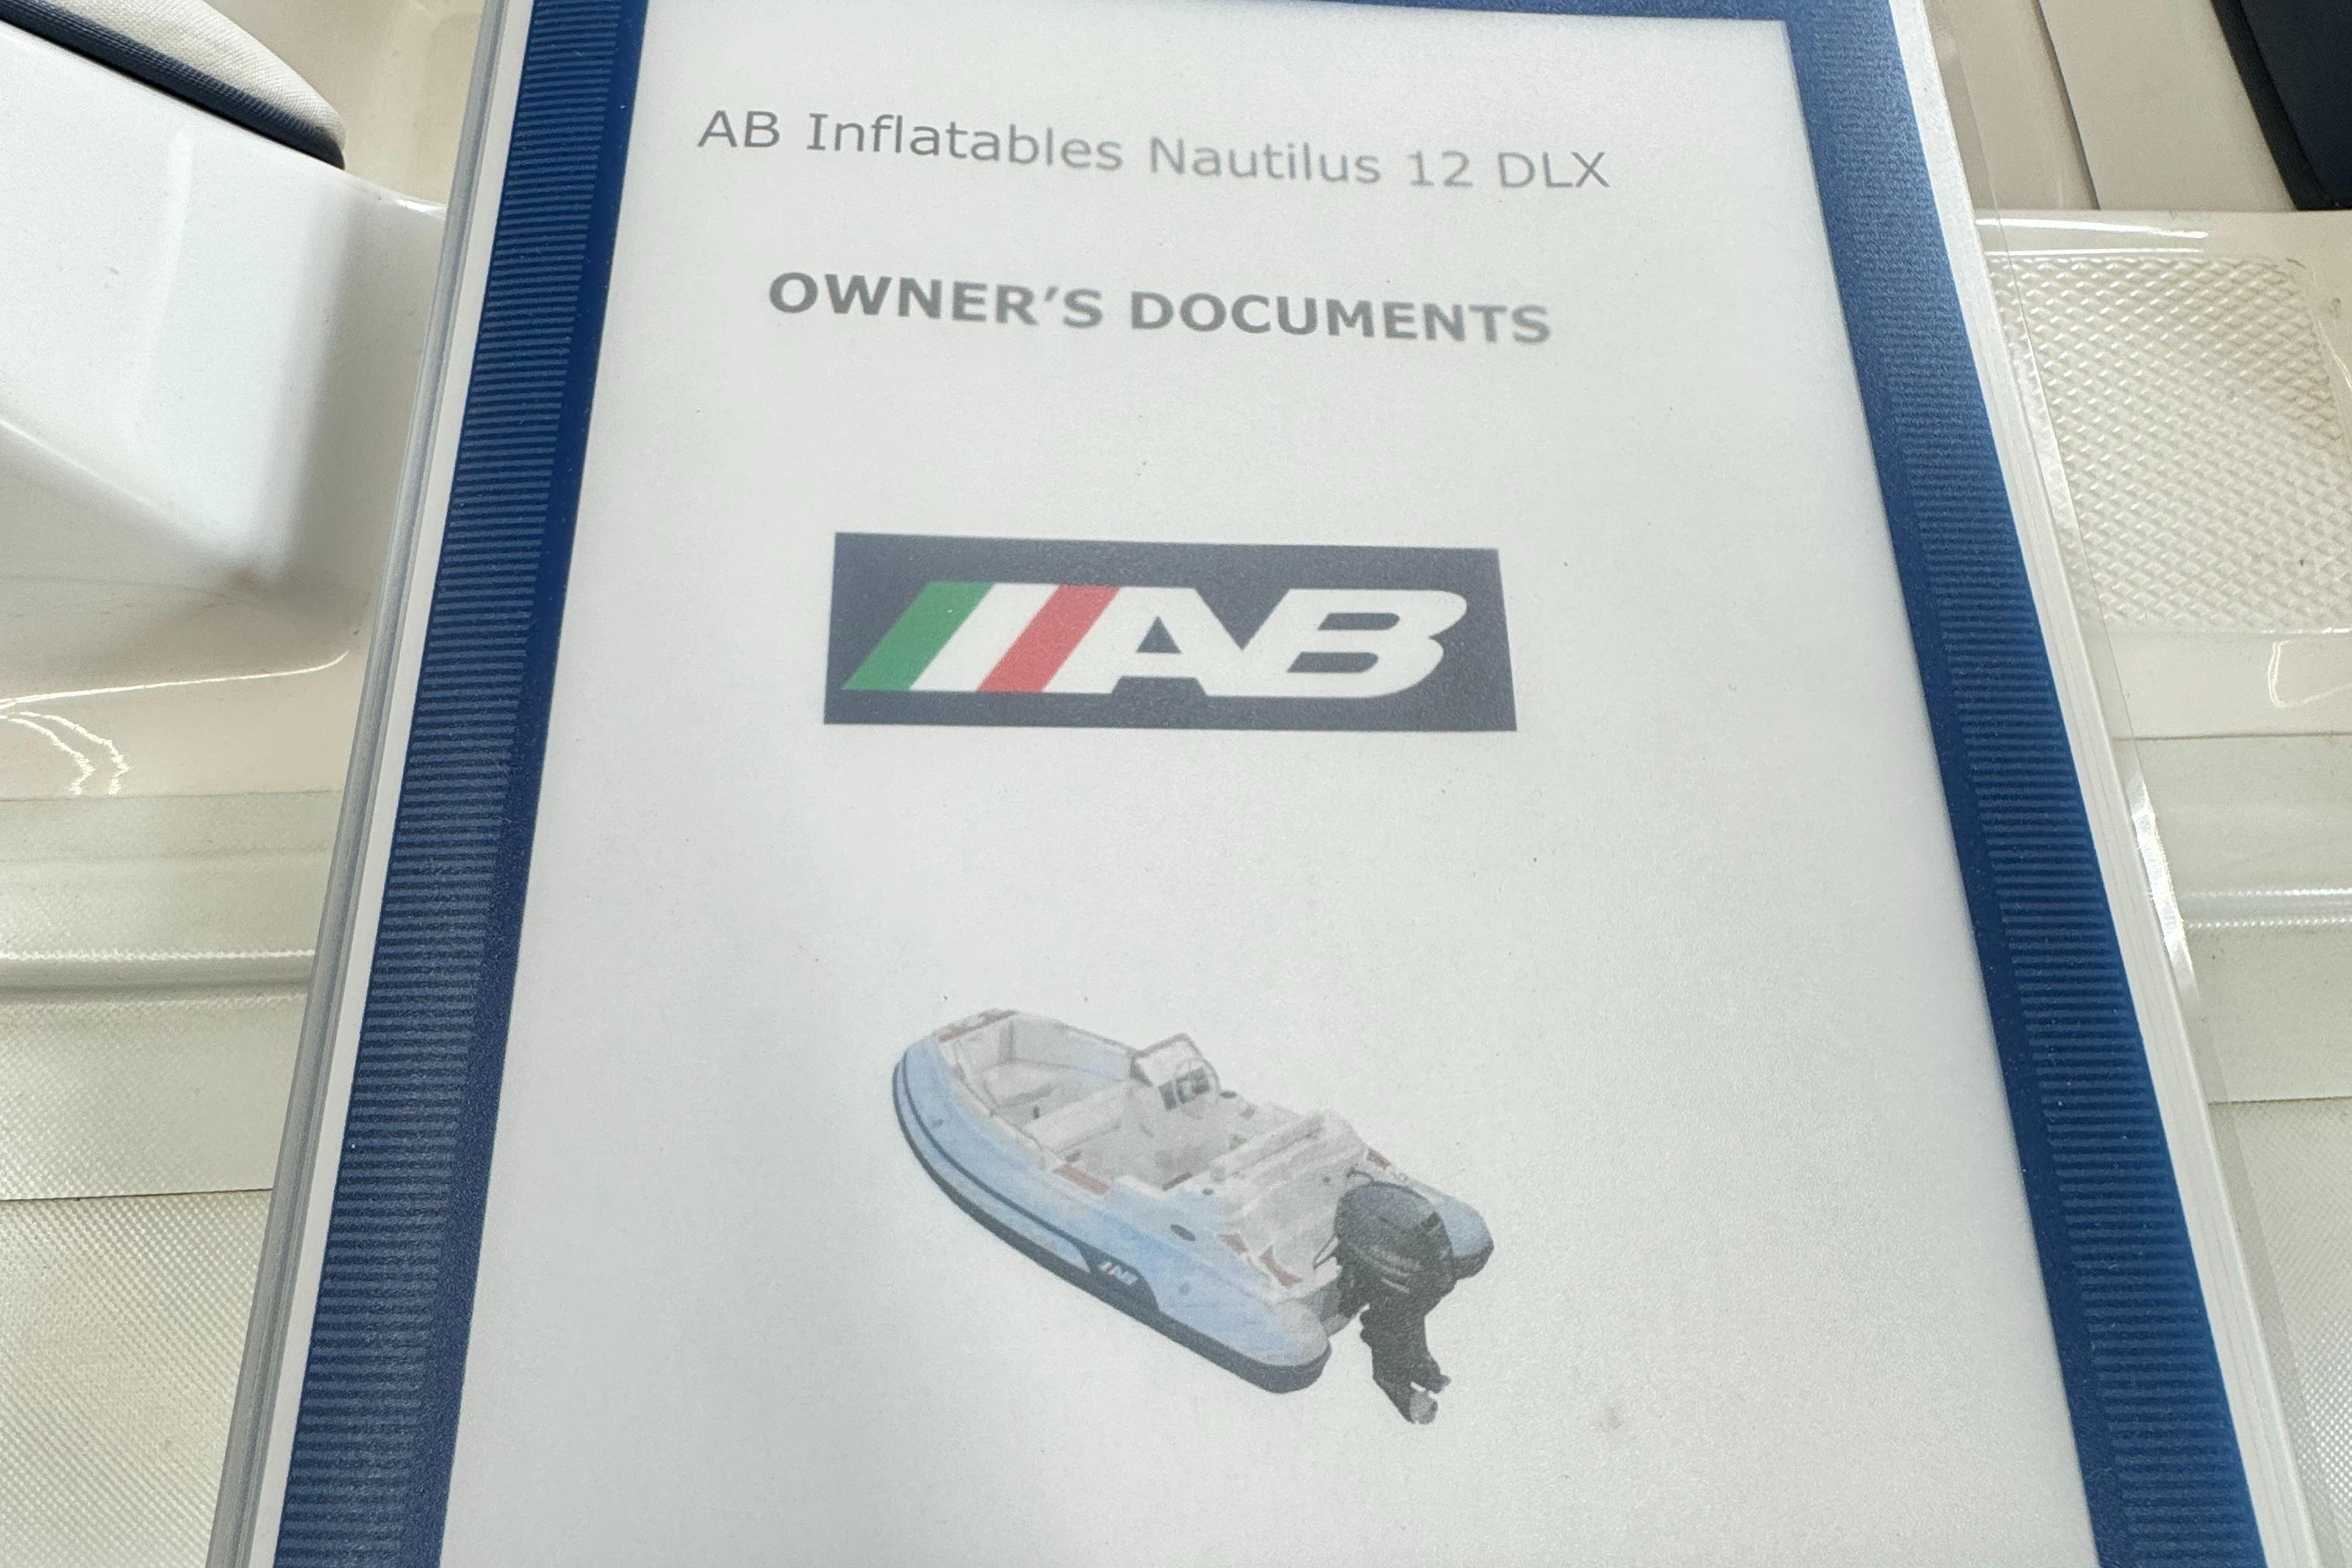 2019 AB Inflatables Nautilus 12 DLX